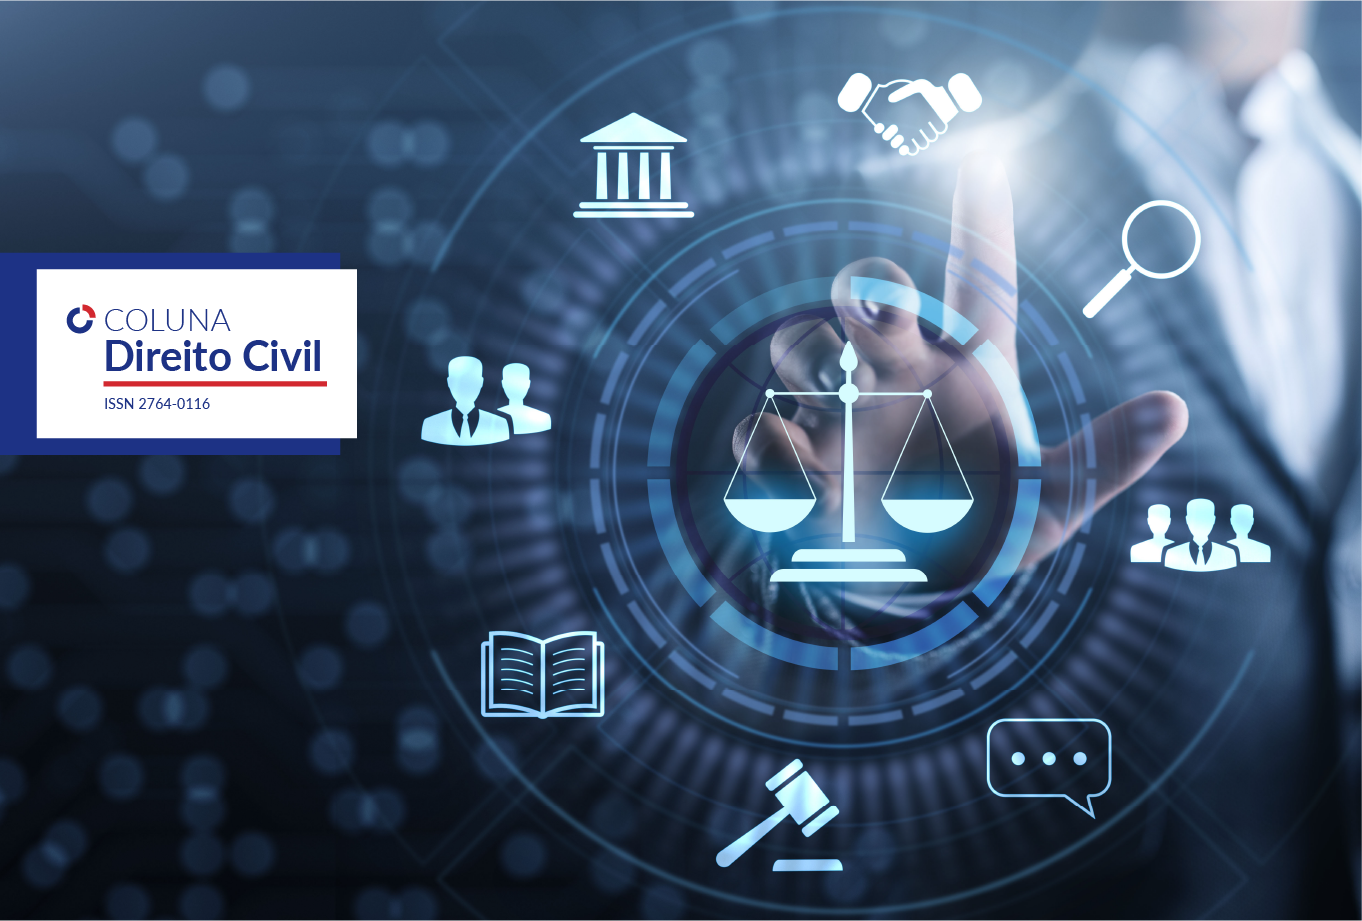 Justiça e Tecnologia: quais os impactos nos espaços judiciários? | Coluna Direito Civil